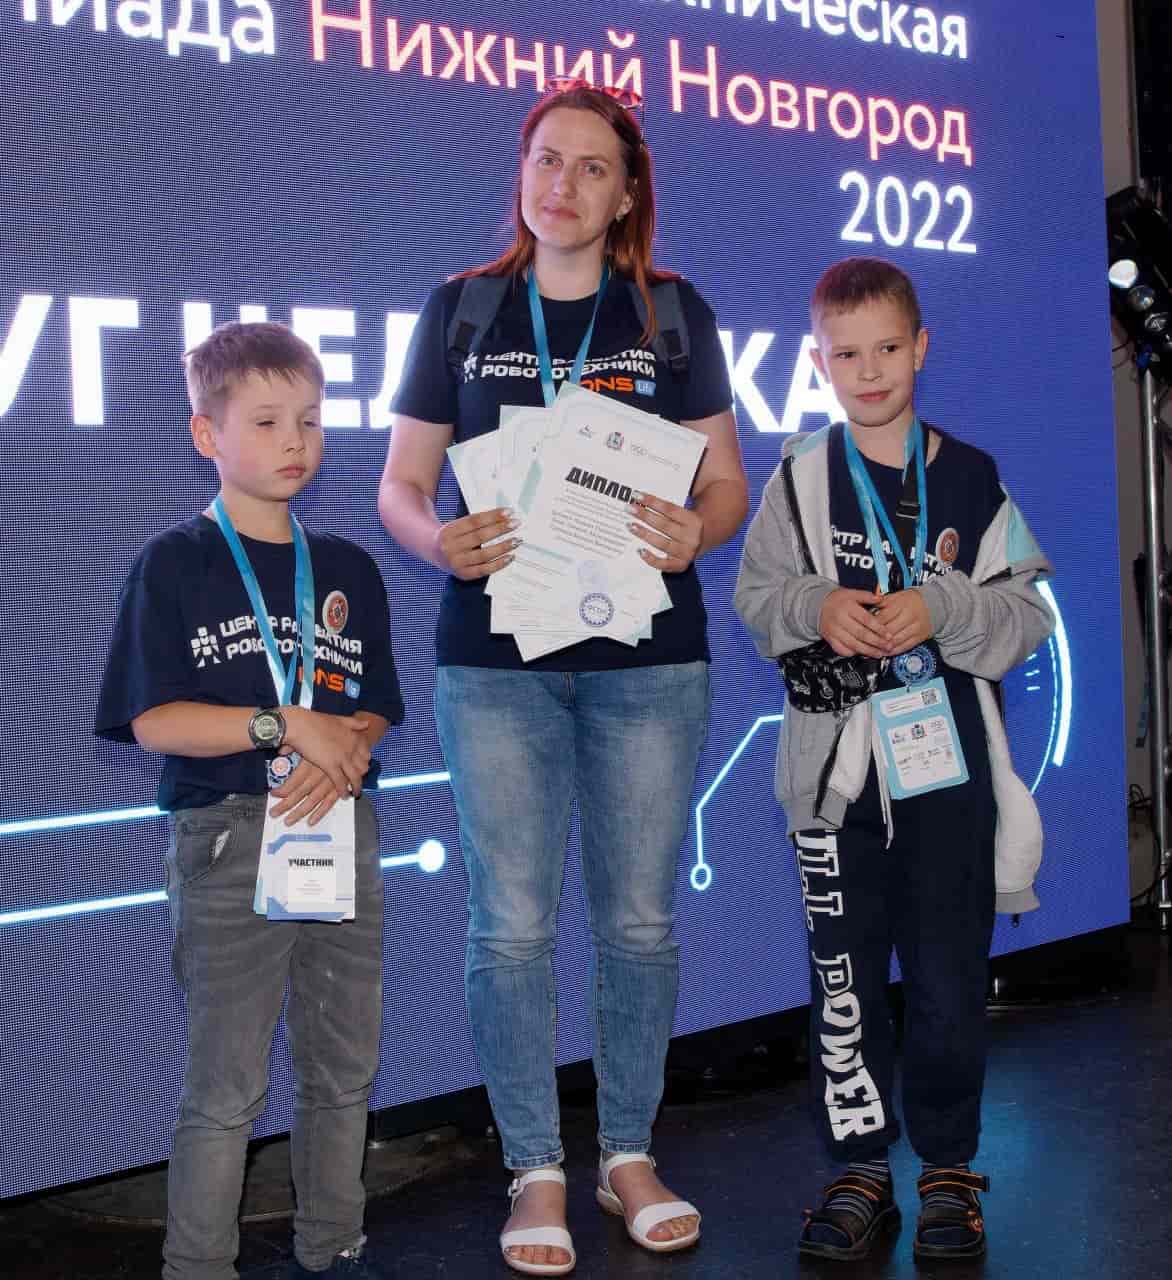 Сборная Центра развития робототехники выиграла 4 золота, 1 серебро и 3 бронзы на Российской робототехнической олимпиаде 2022 в Нижнем Новгороде!